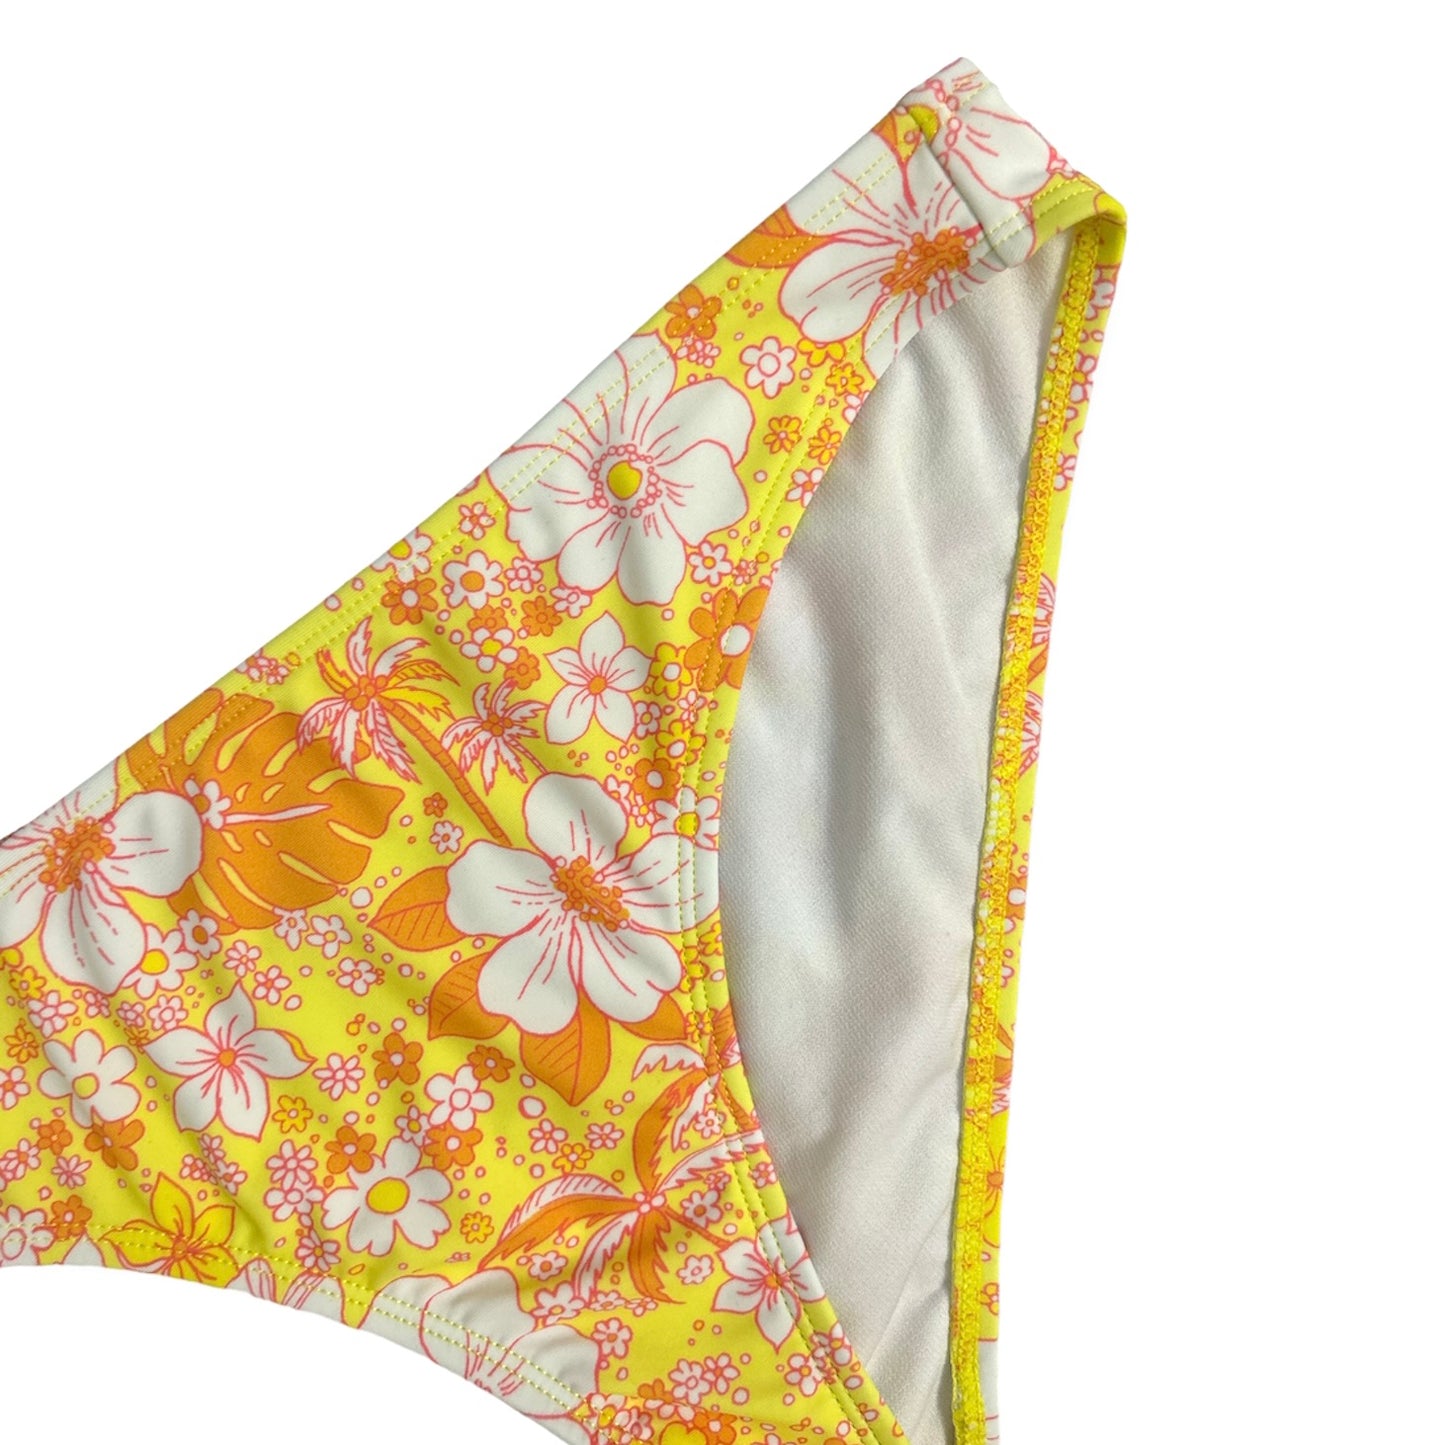 Floral Print Yellow/Orange Hipster Bikini Bottoms Size L Women's Swimwear